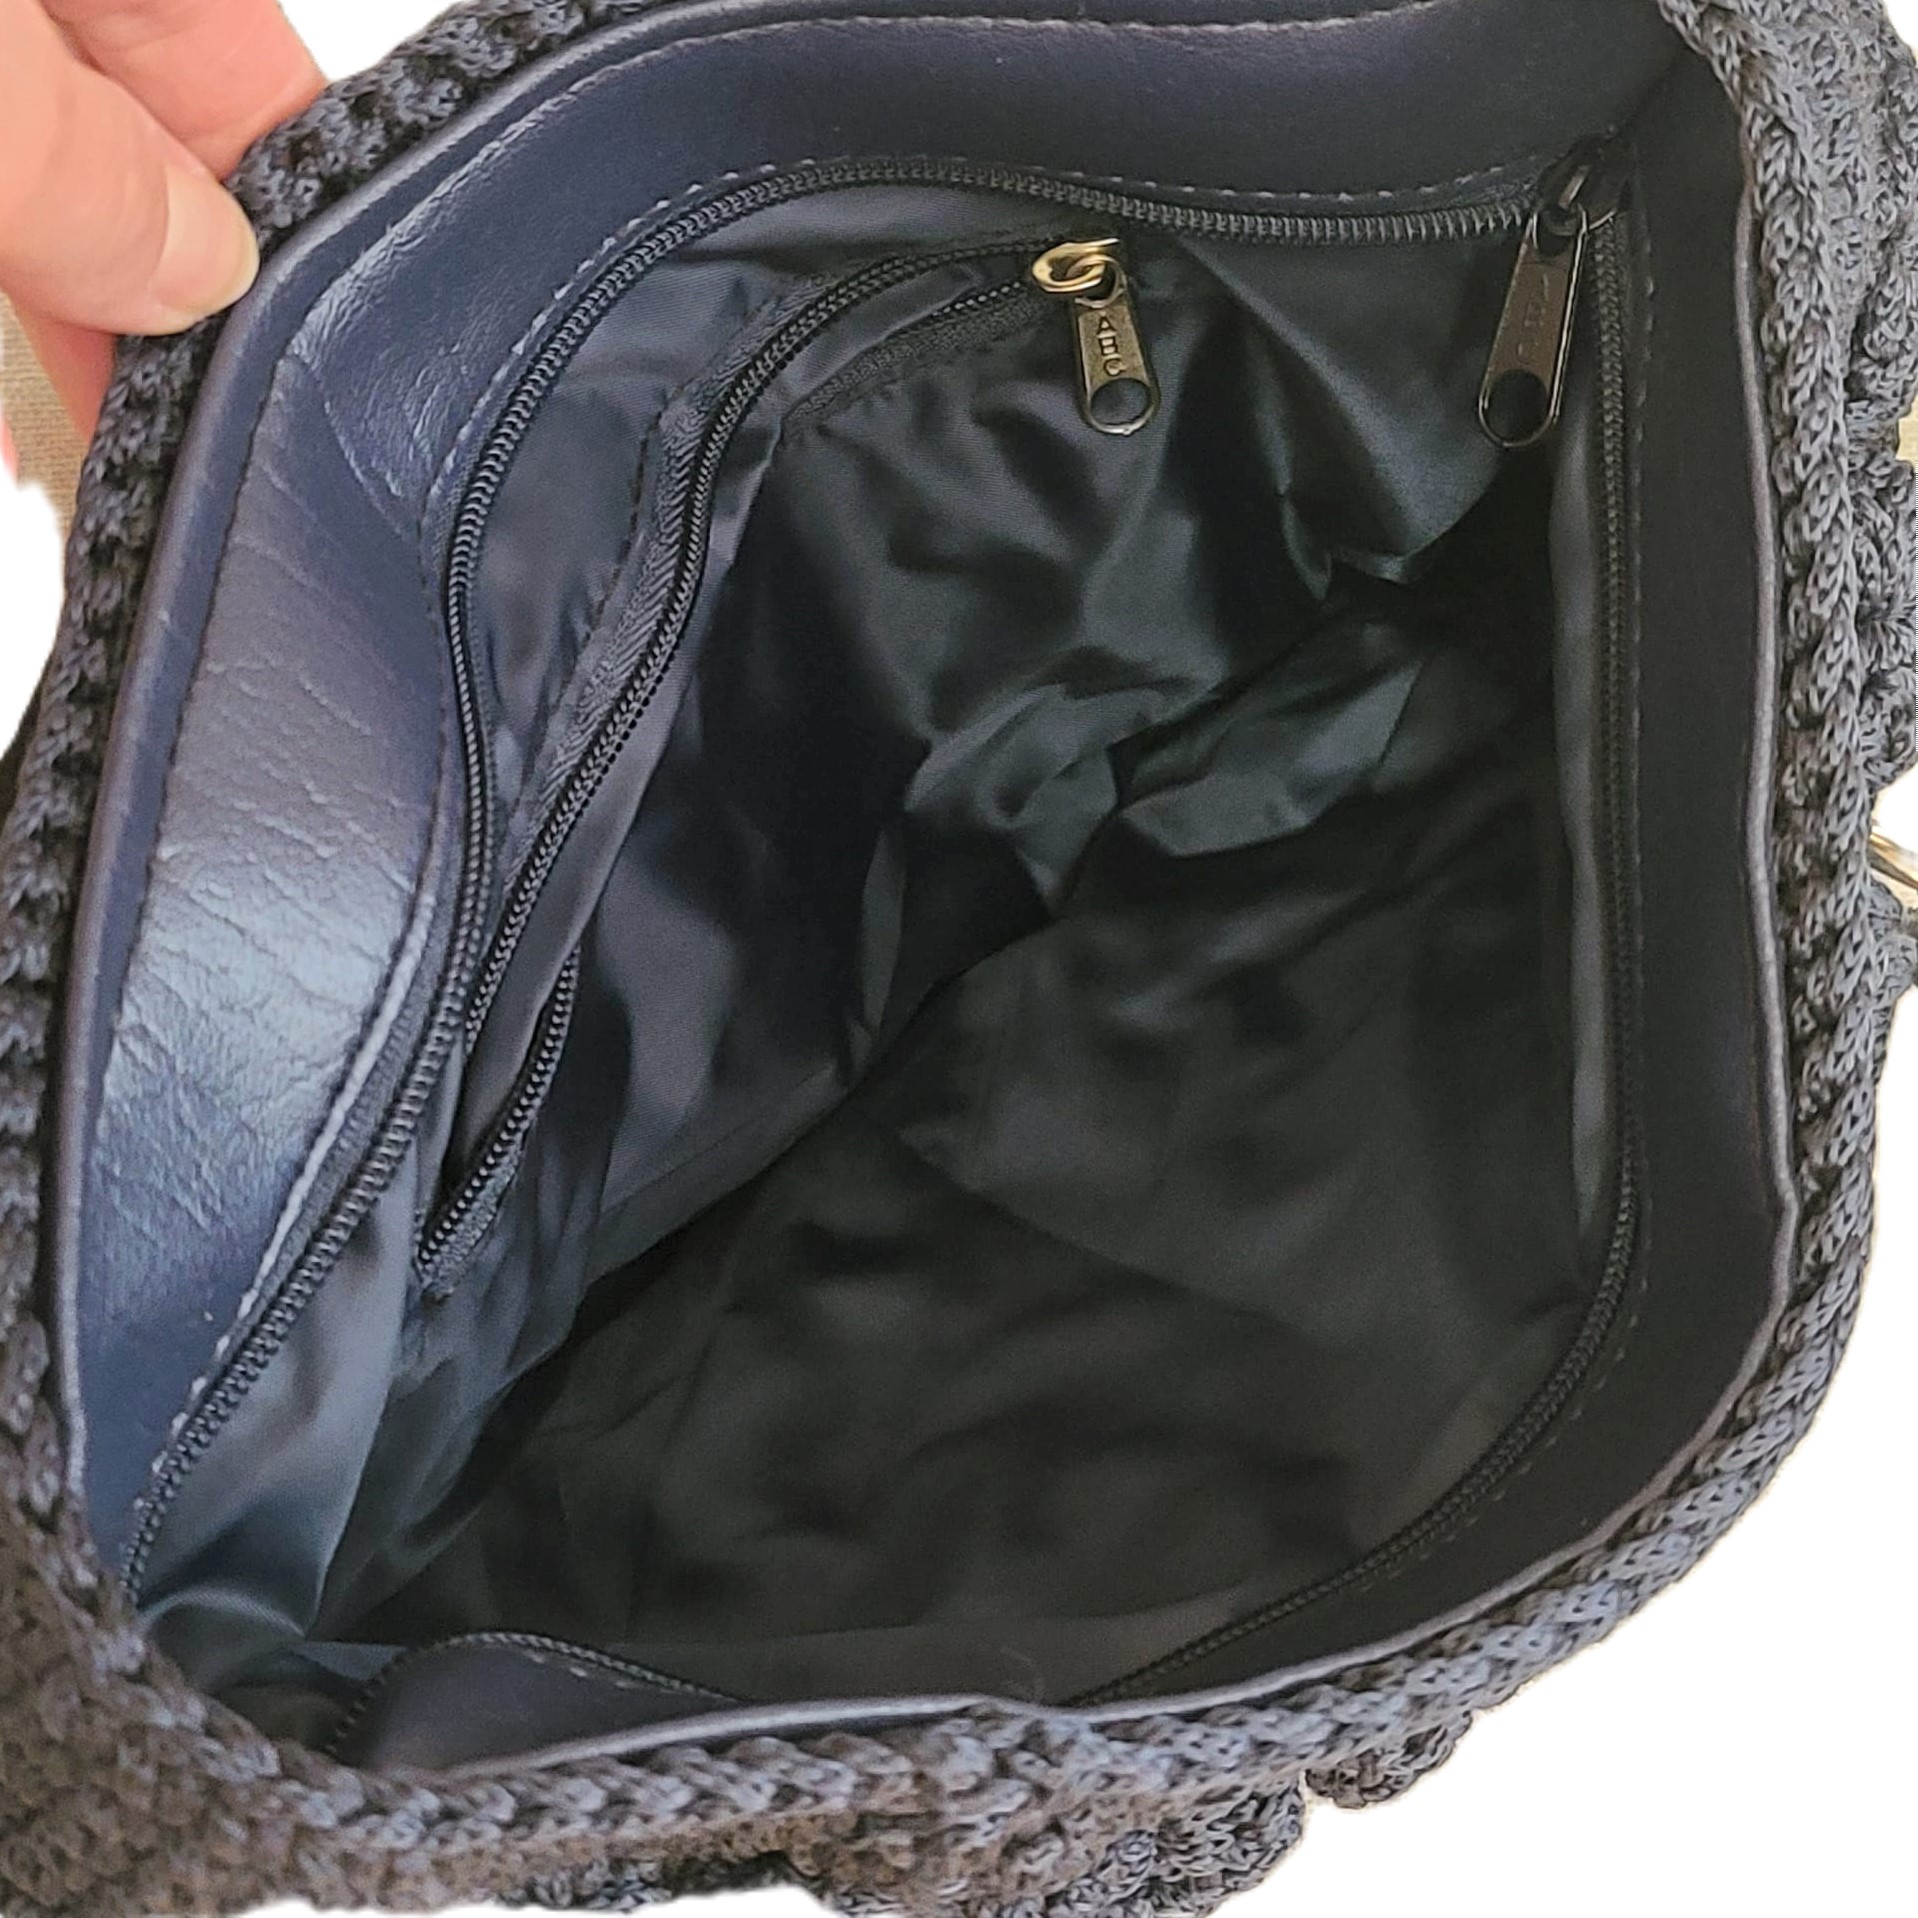 Macrame Dragon Scale Handbag Slate Gray and Black